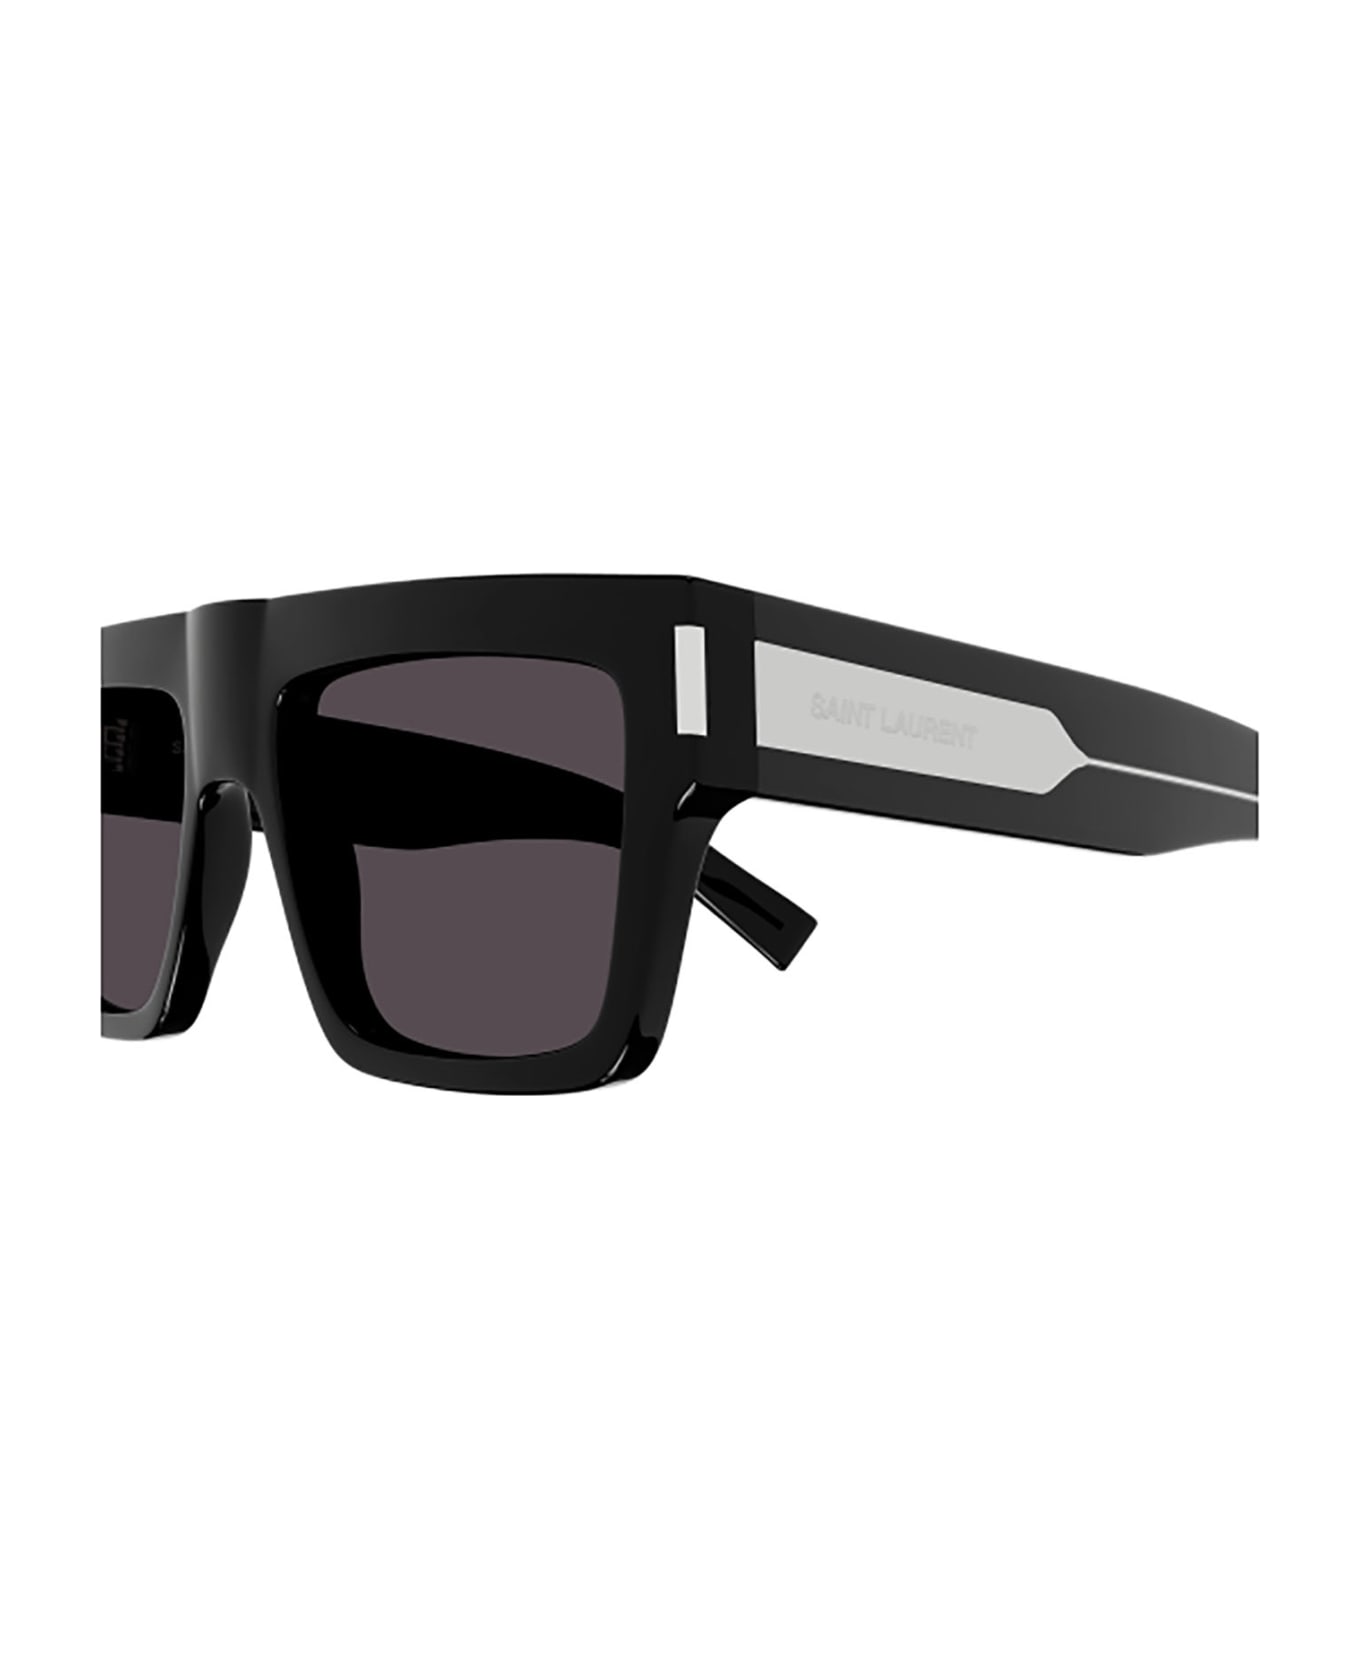 Saint Laurent Eyewear Sl 628 Sunglasses - 001 black crystal black